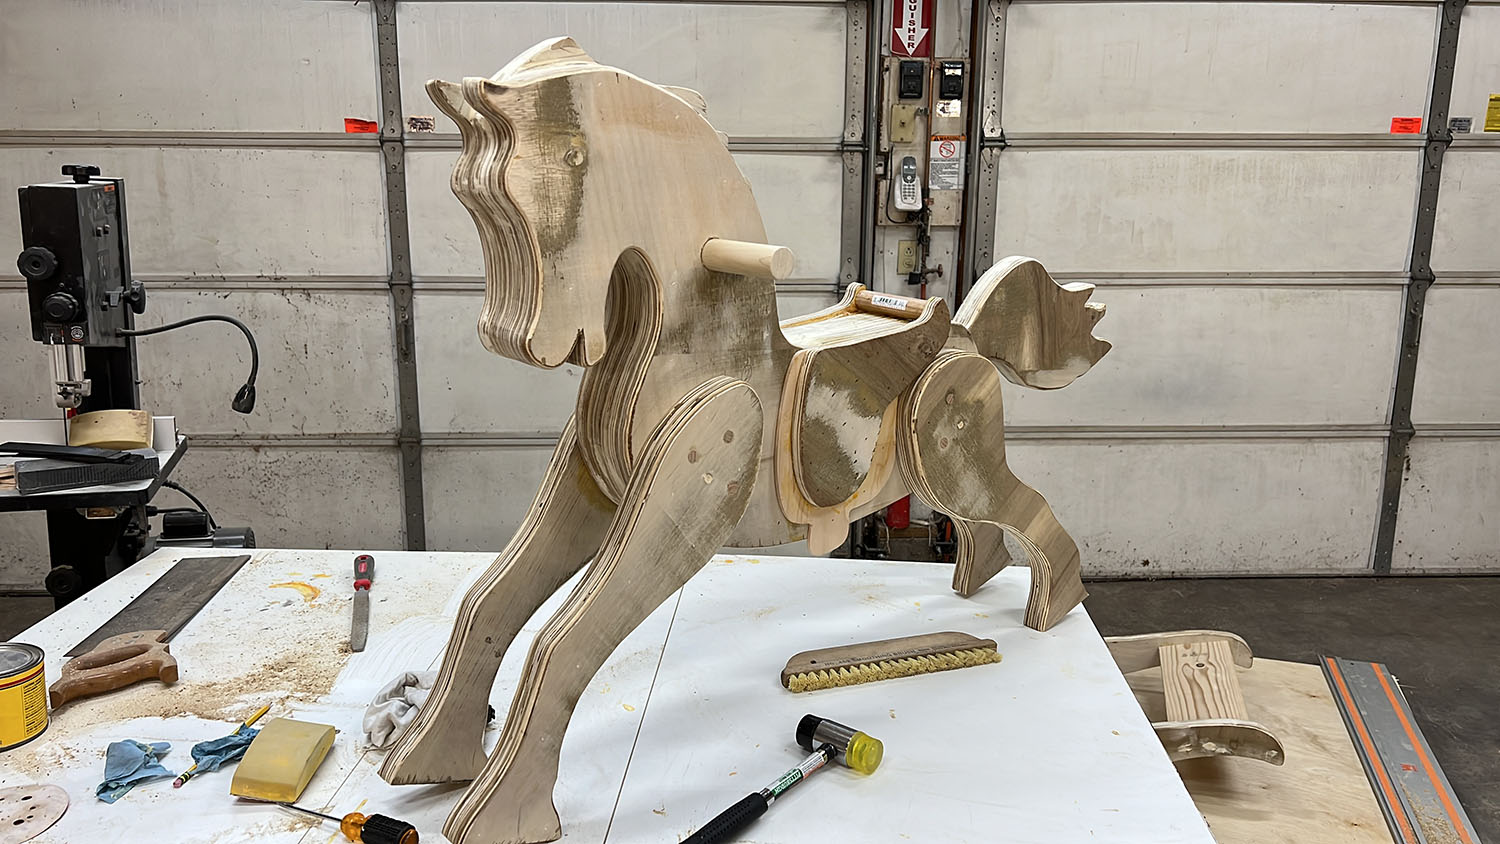 Assembled wooden horse